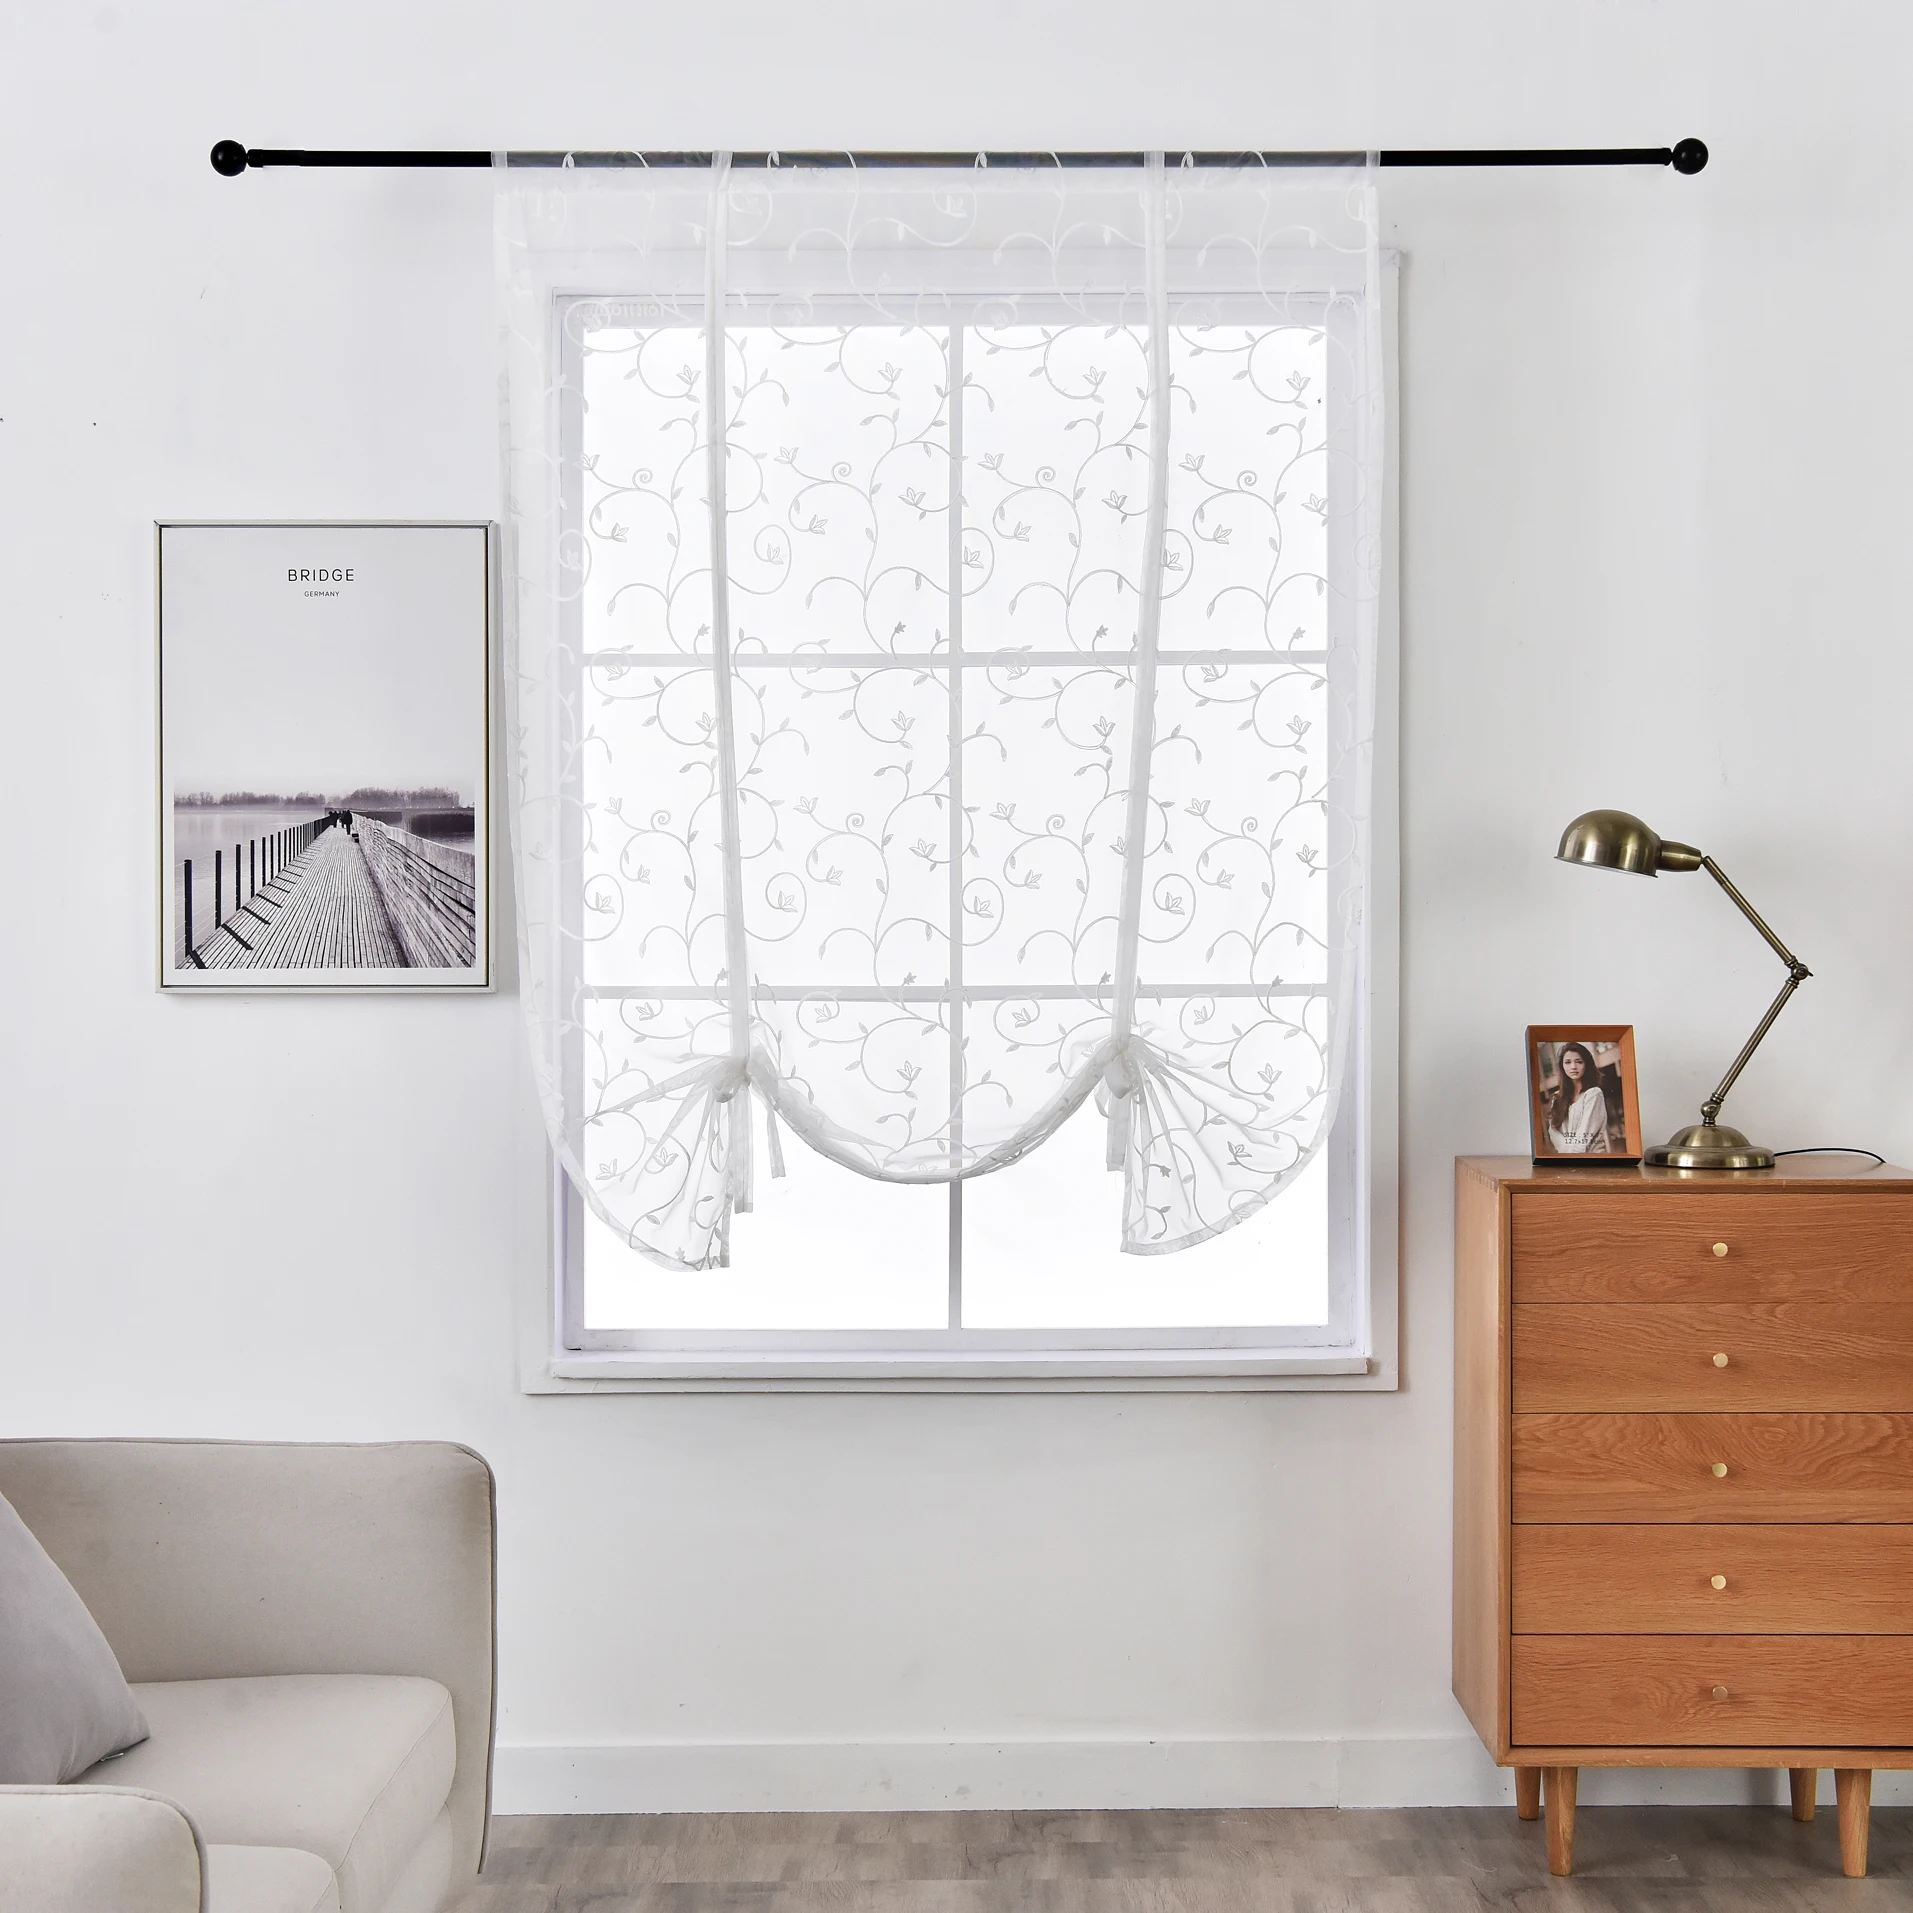 Lanke Beyaz Arabesk Ağacı Pencere Tarama, tül Kısa Perdeler Oturma Odası Yatak Odası Mutfak için, baskı Perdeler Dekor 12 Boyutları